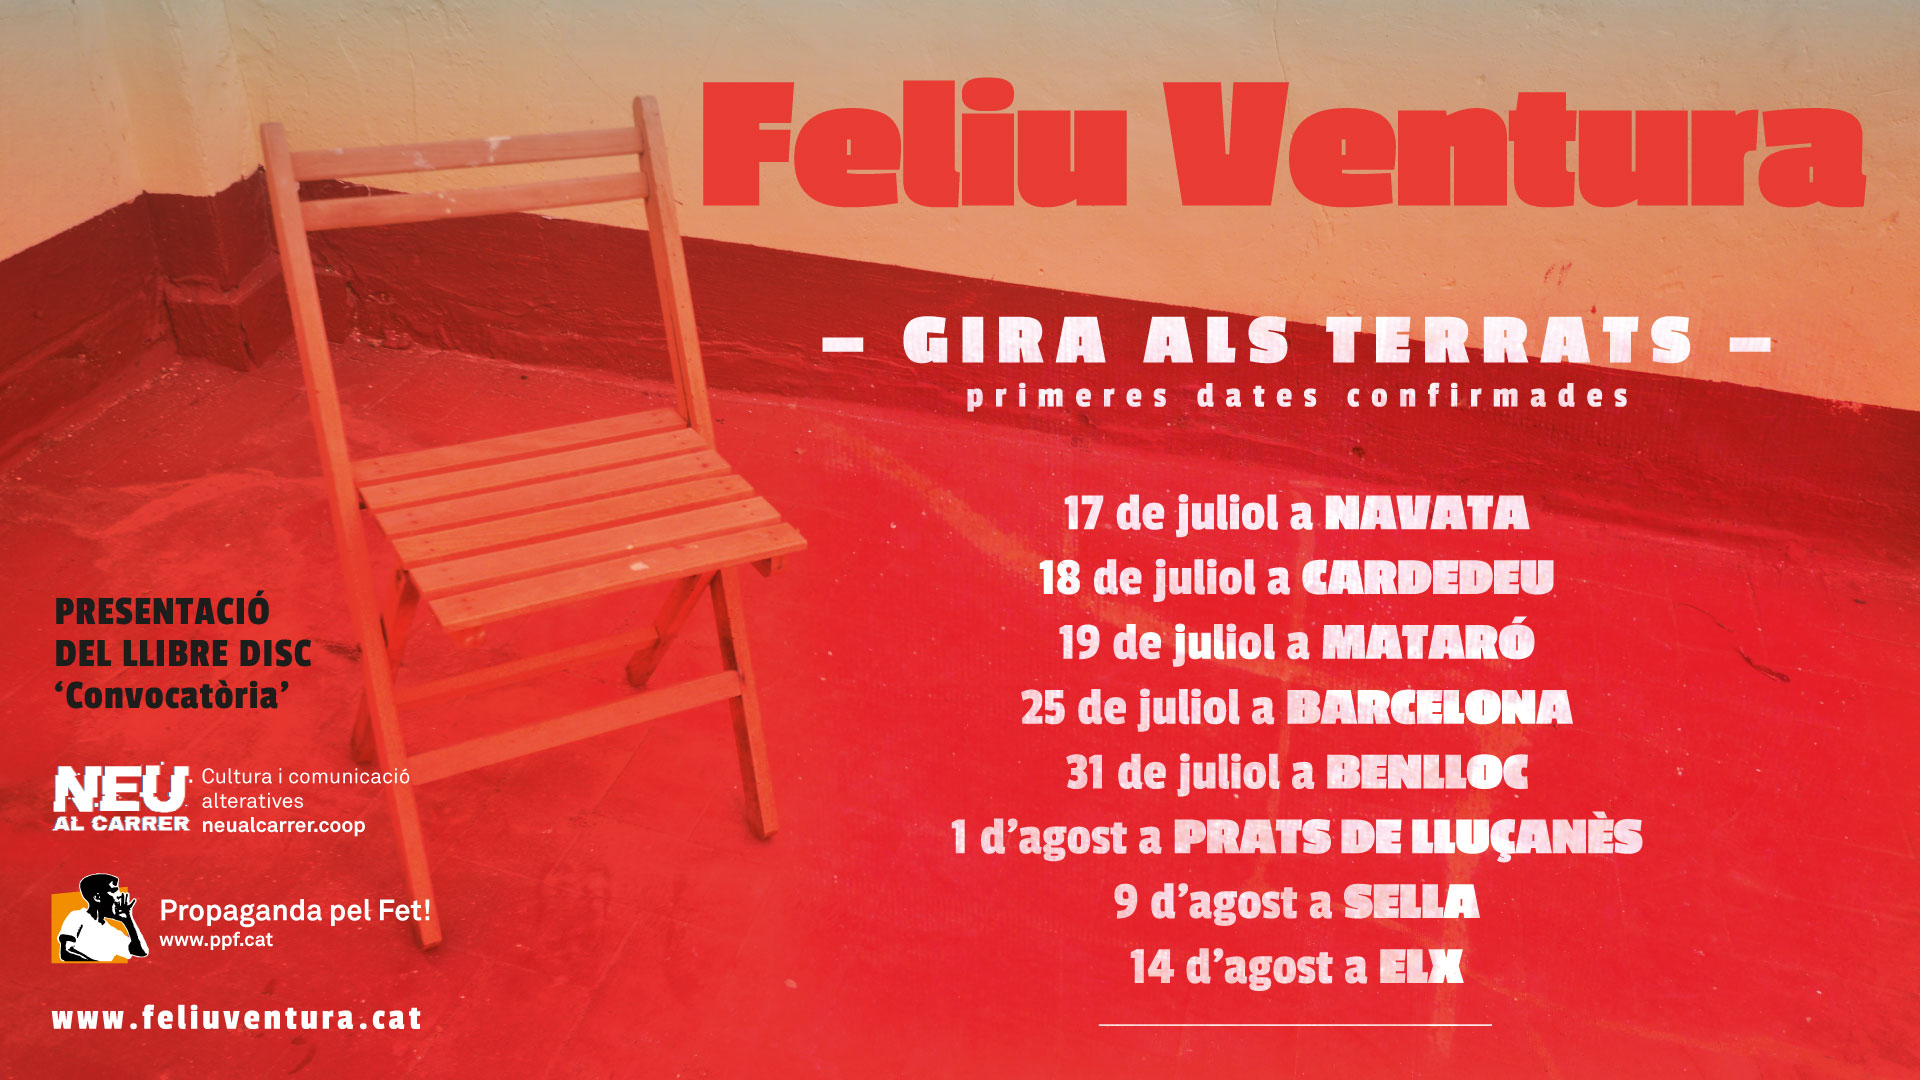 La “Gira als Terrats” de Feliu Ventura ja té les primeres dates confirmades per aquest estiu